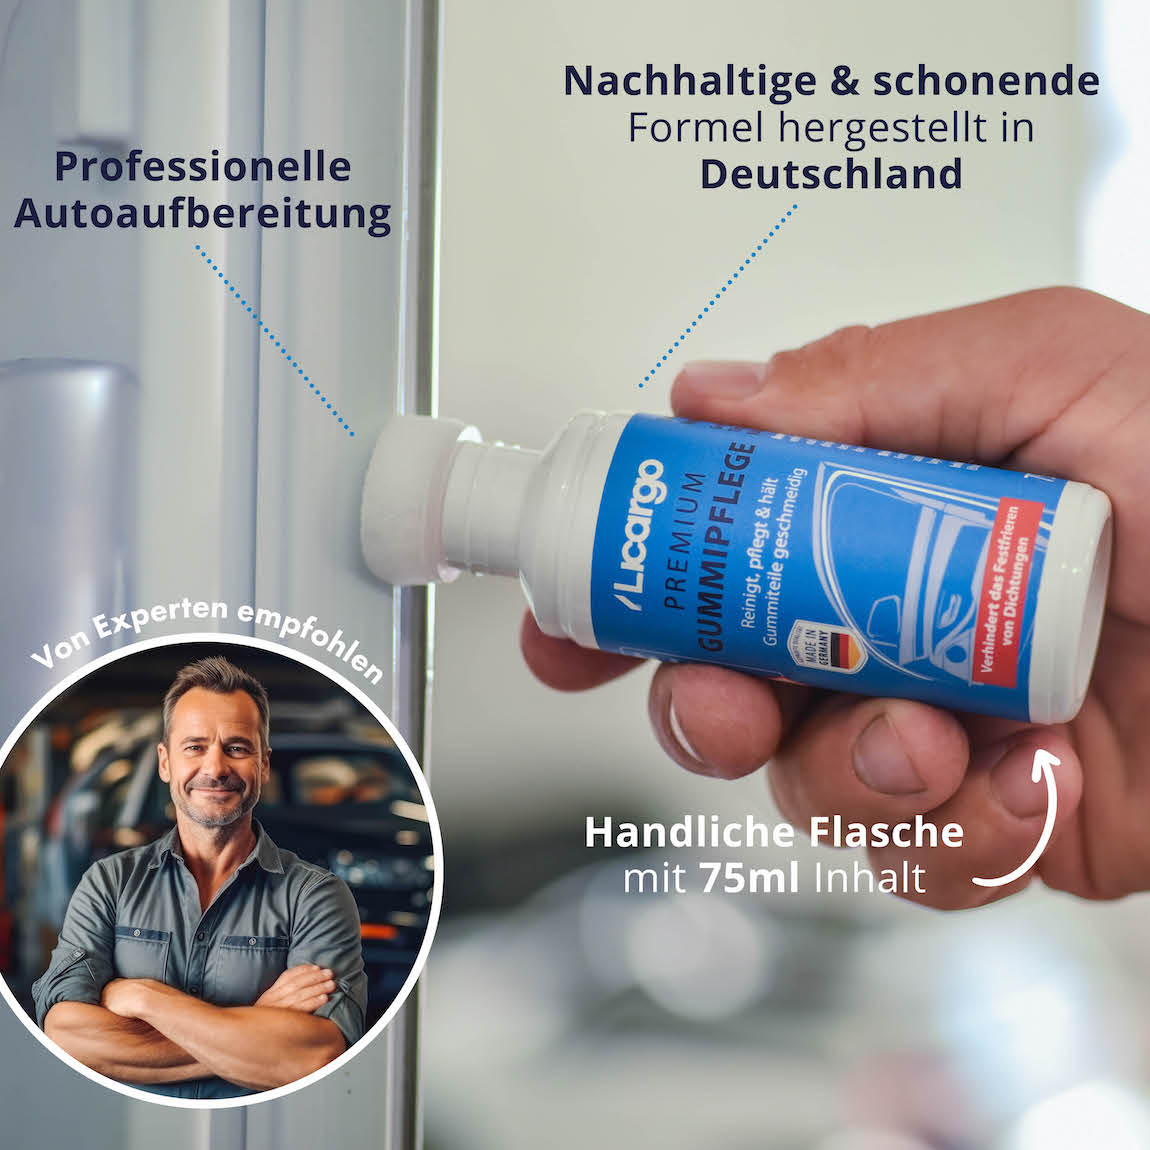 Made in Germany=>Unsere Gummipflege ist ein unverzichtbarer Bestandteil Deiner Autopflege im Winter, um einfache und nützliche Ergebnisse zu erzielen.